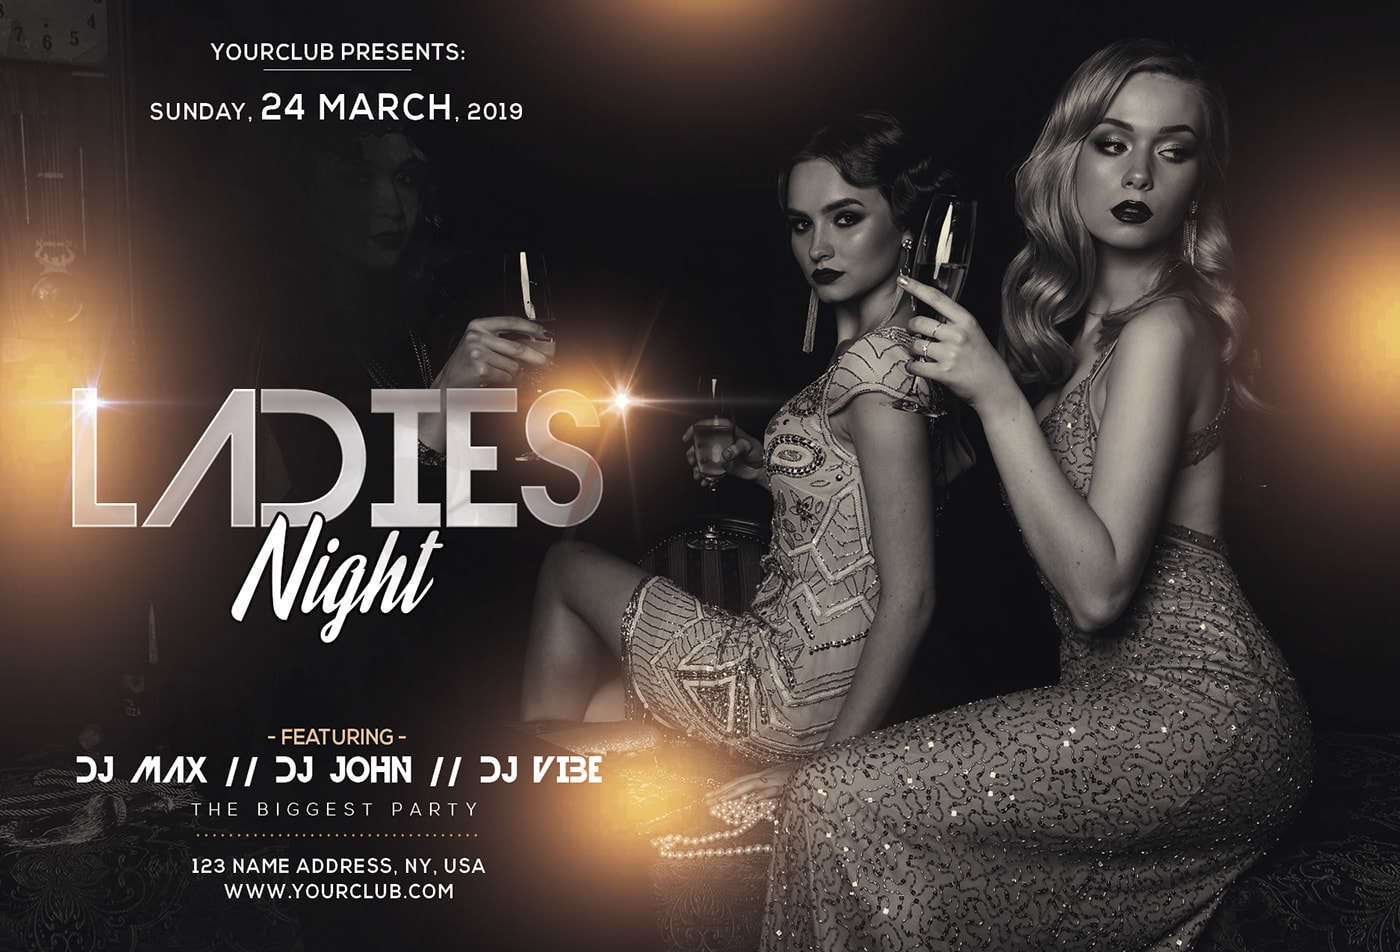 Ladies Night Party Images - Free Download on Freepik